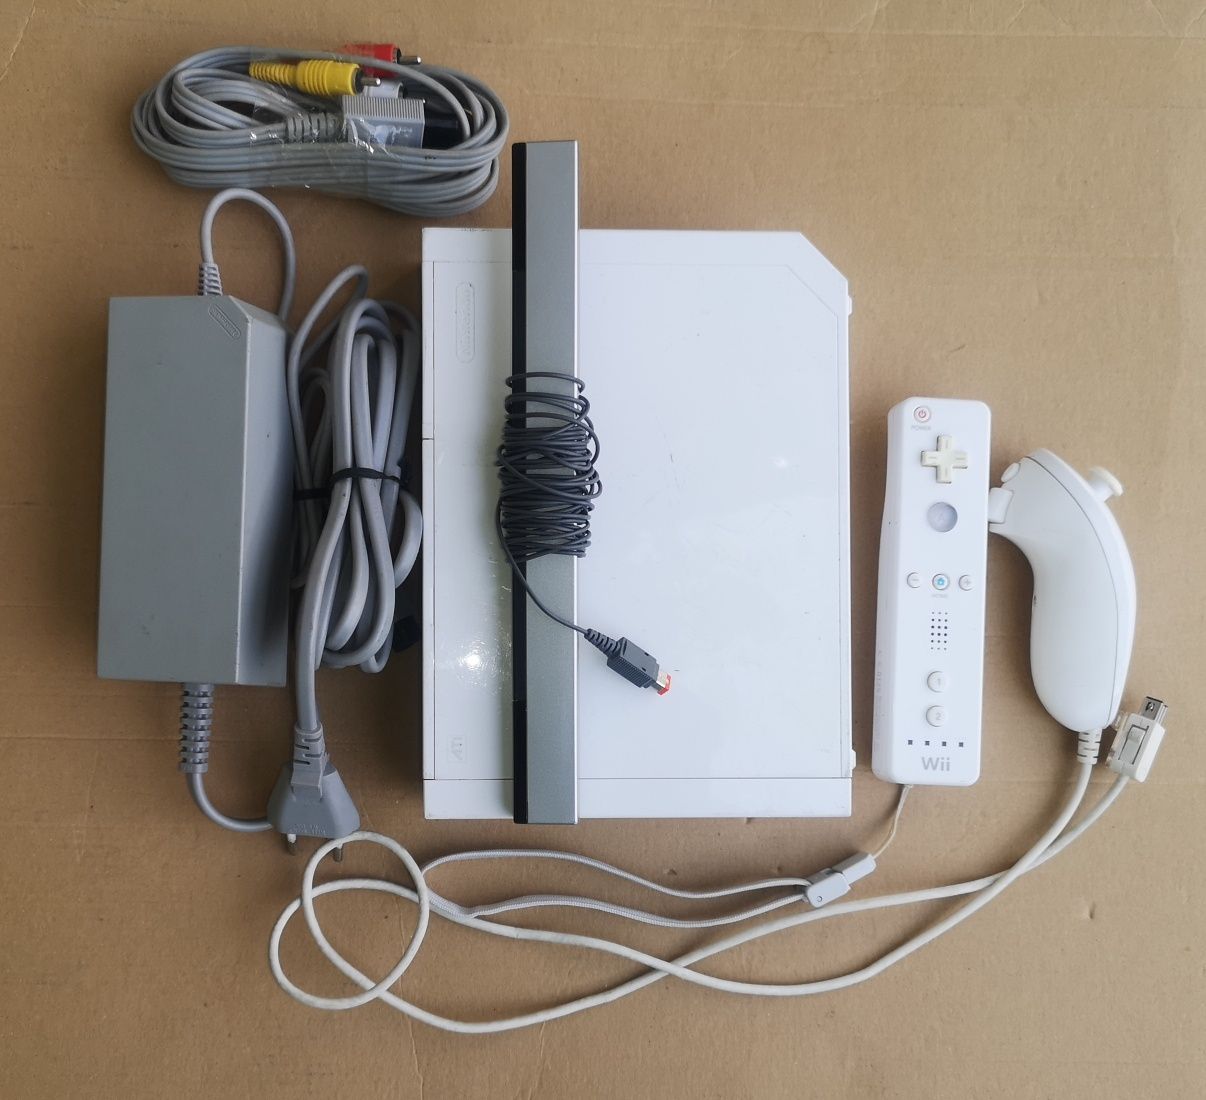 Consolă Wii Nintendo modată + 140 jocuri, toate accesoriile